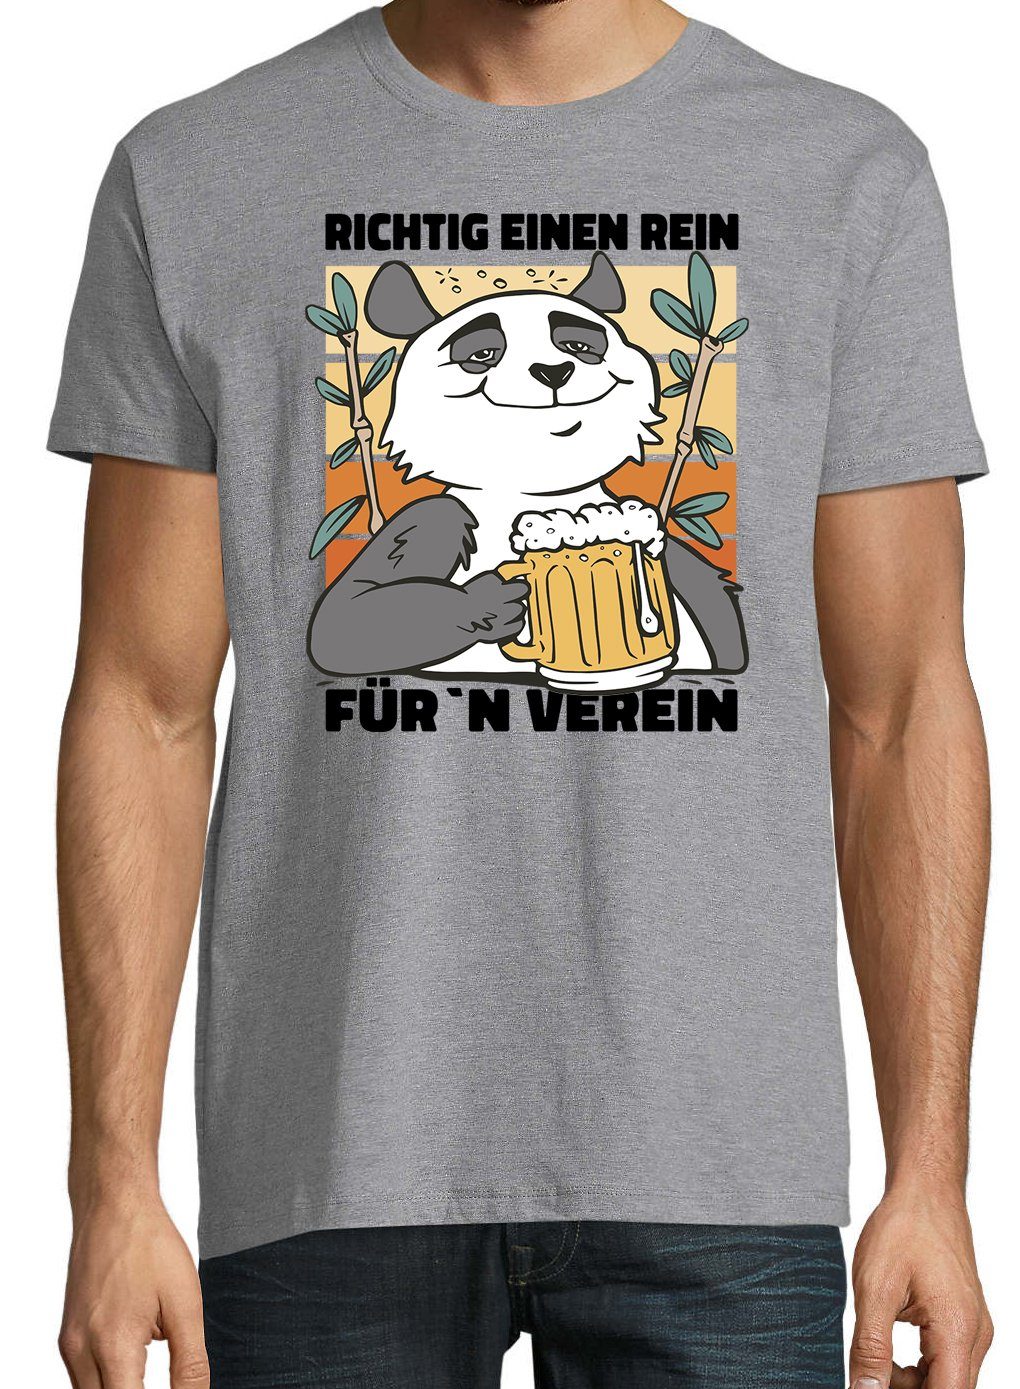 Rein, Youth Herren Ein Shirt Verein" Frontprint T-Shirt Designz Für´n "Richtig mit Grau trendigem